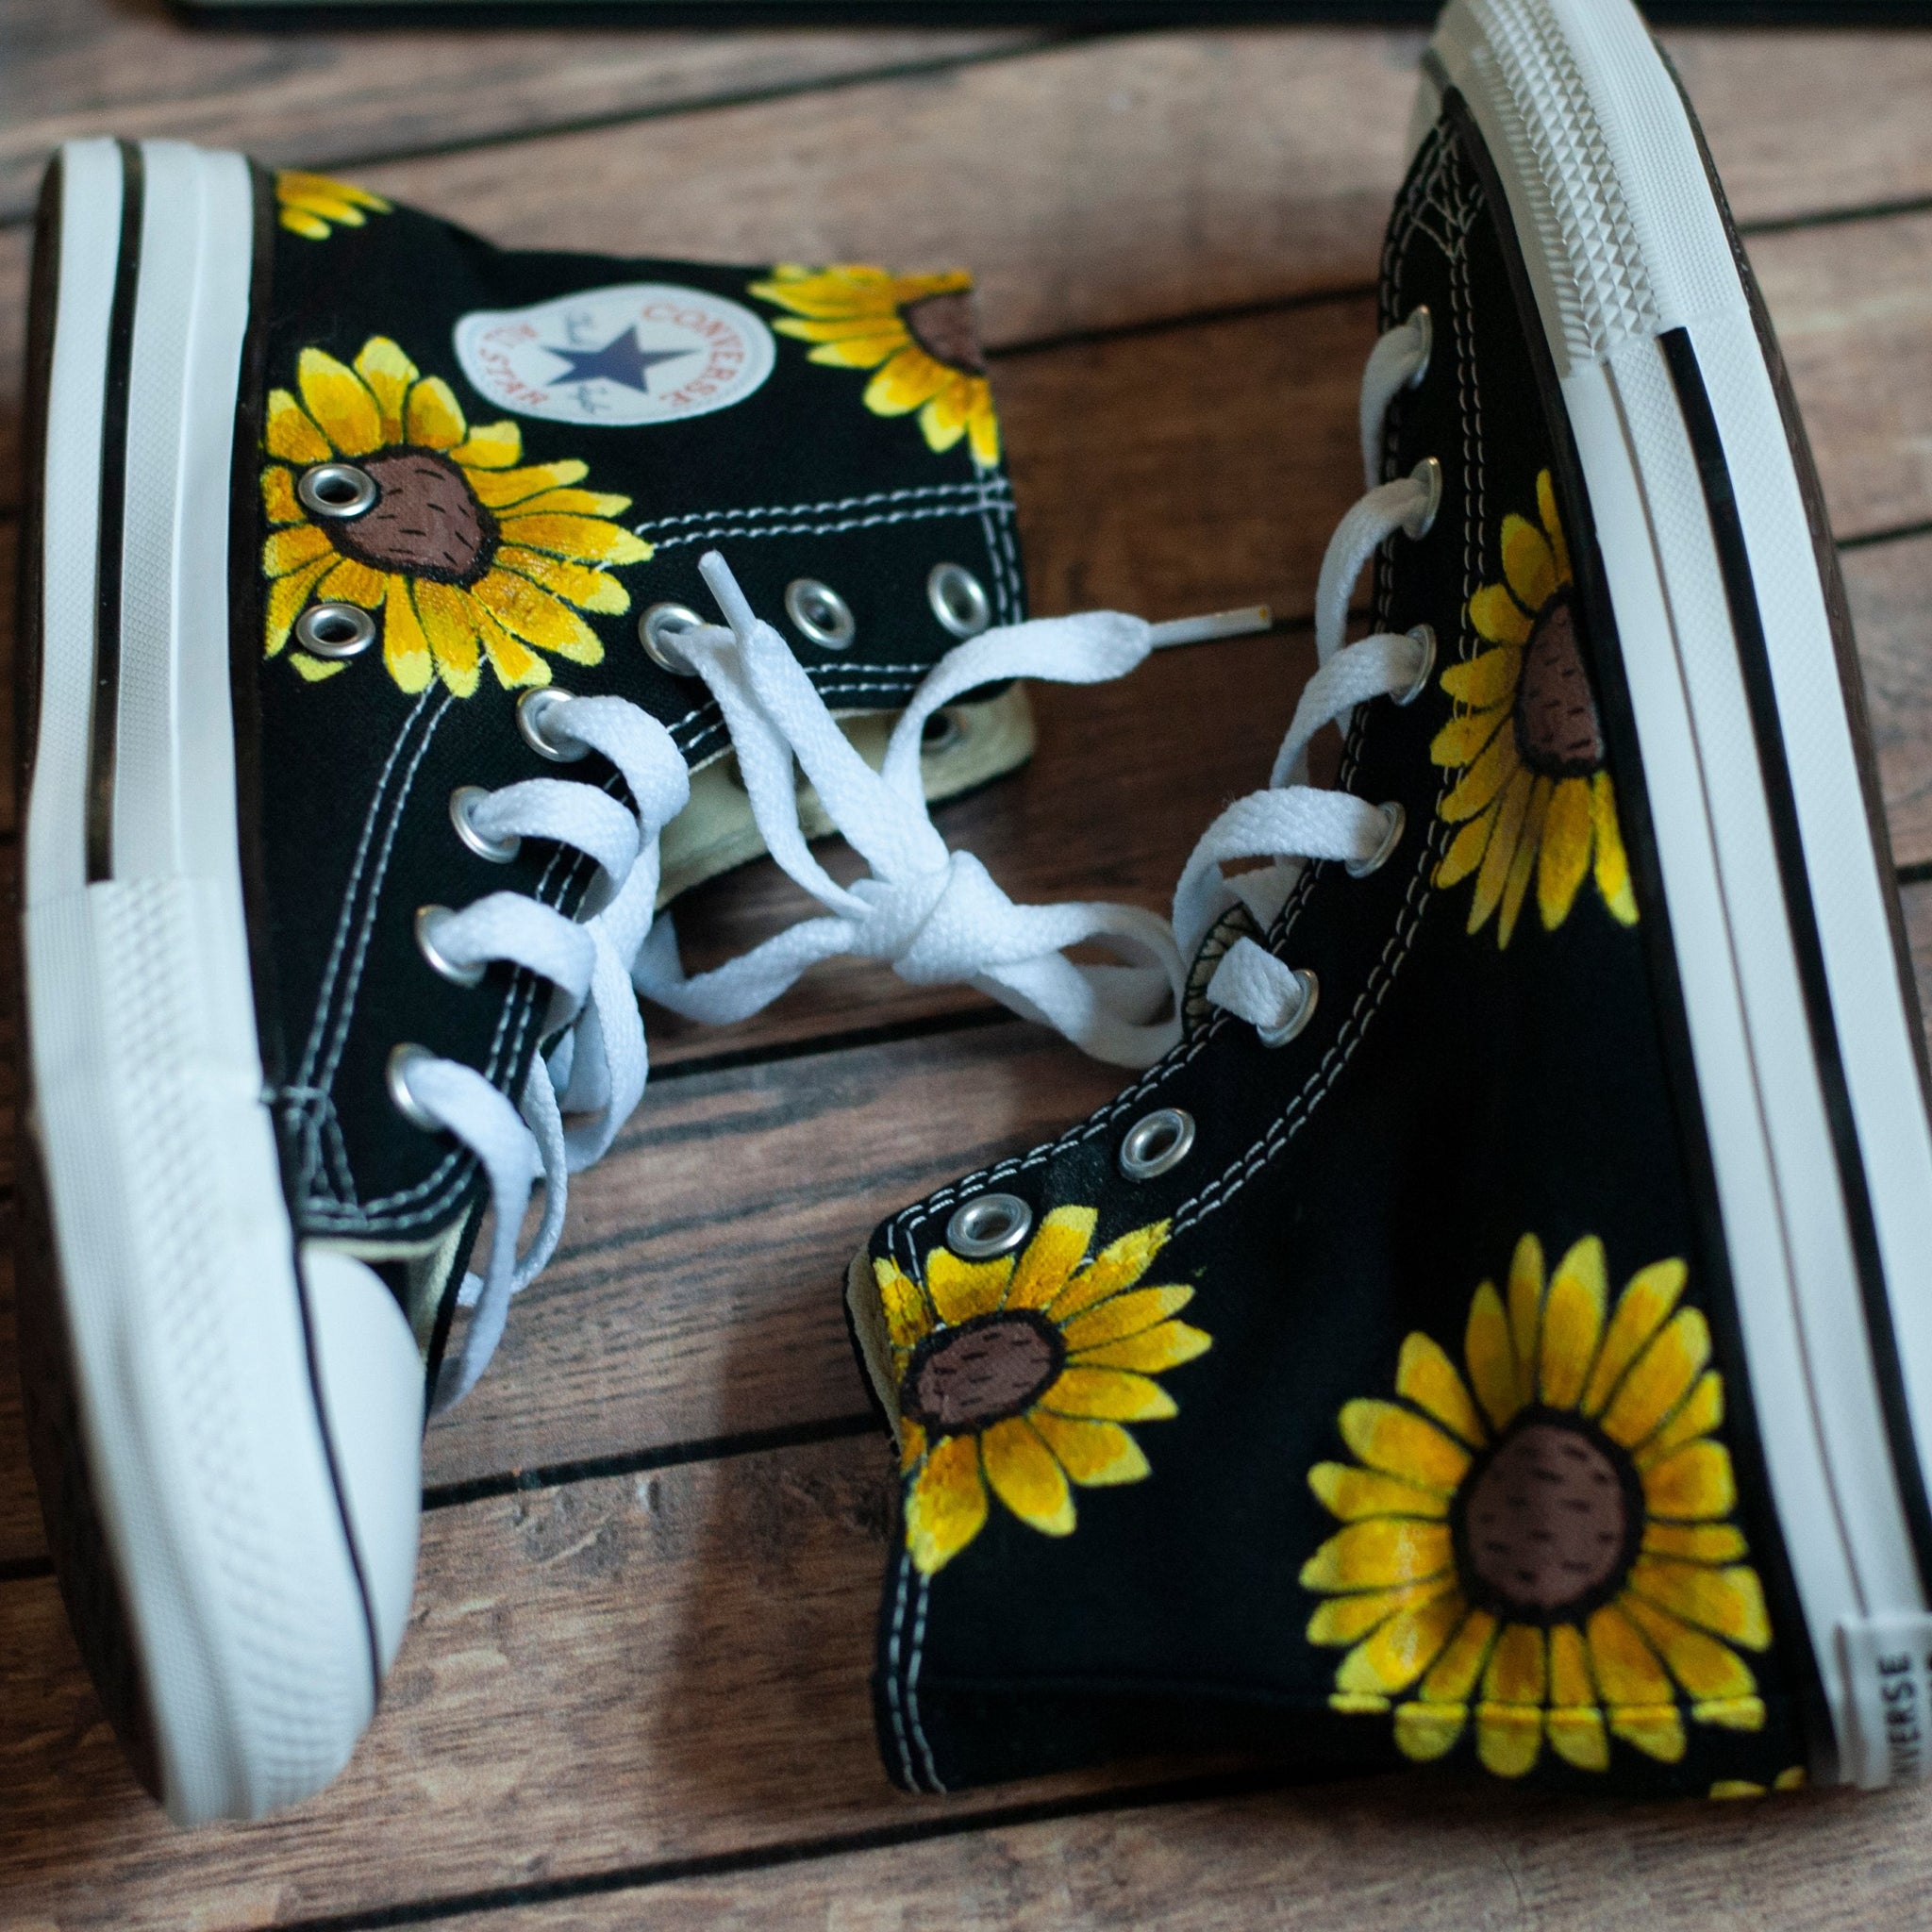 Sunflower High Top Converse | Black High Top Converse